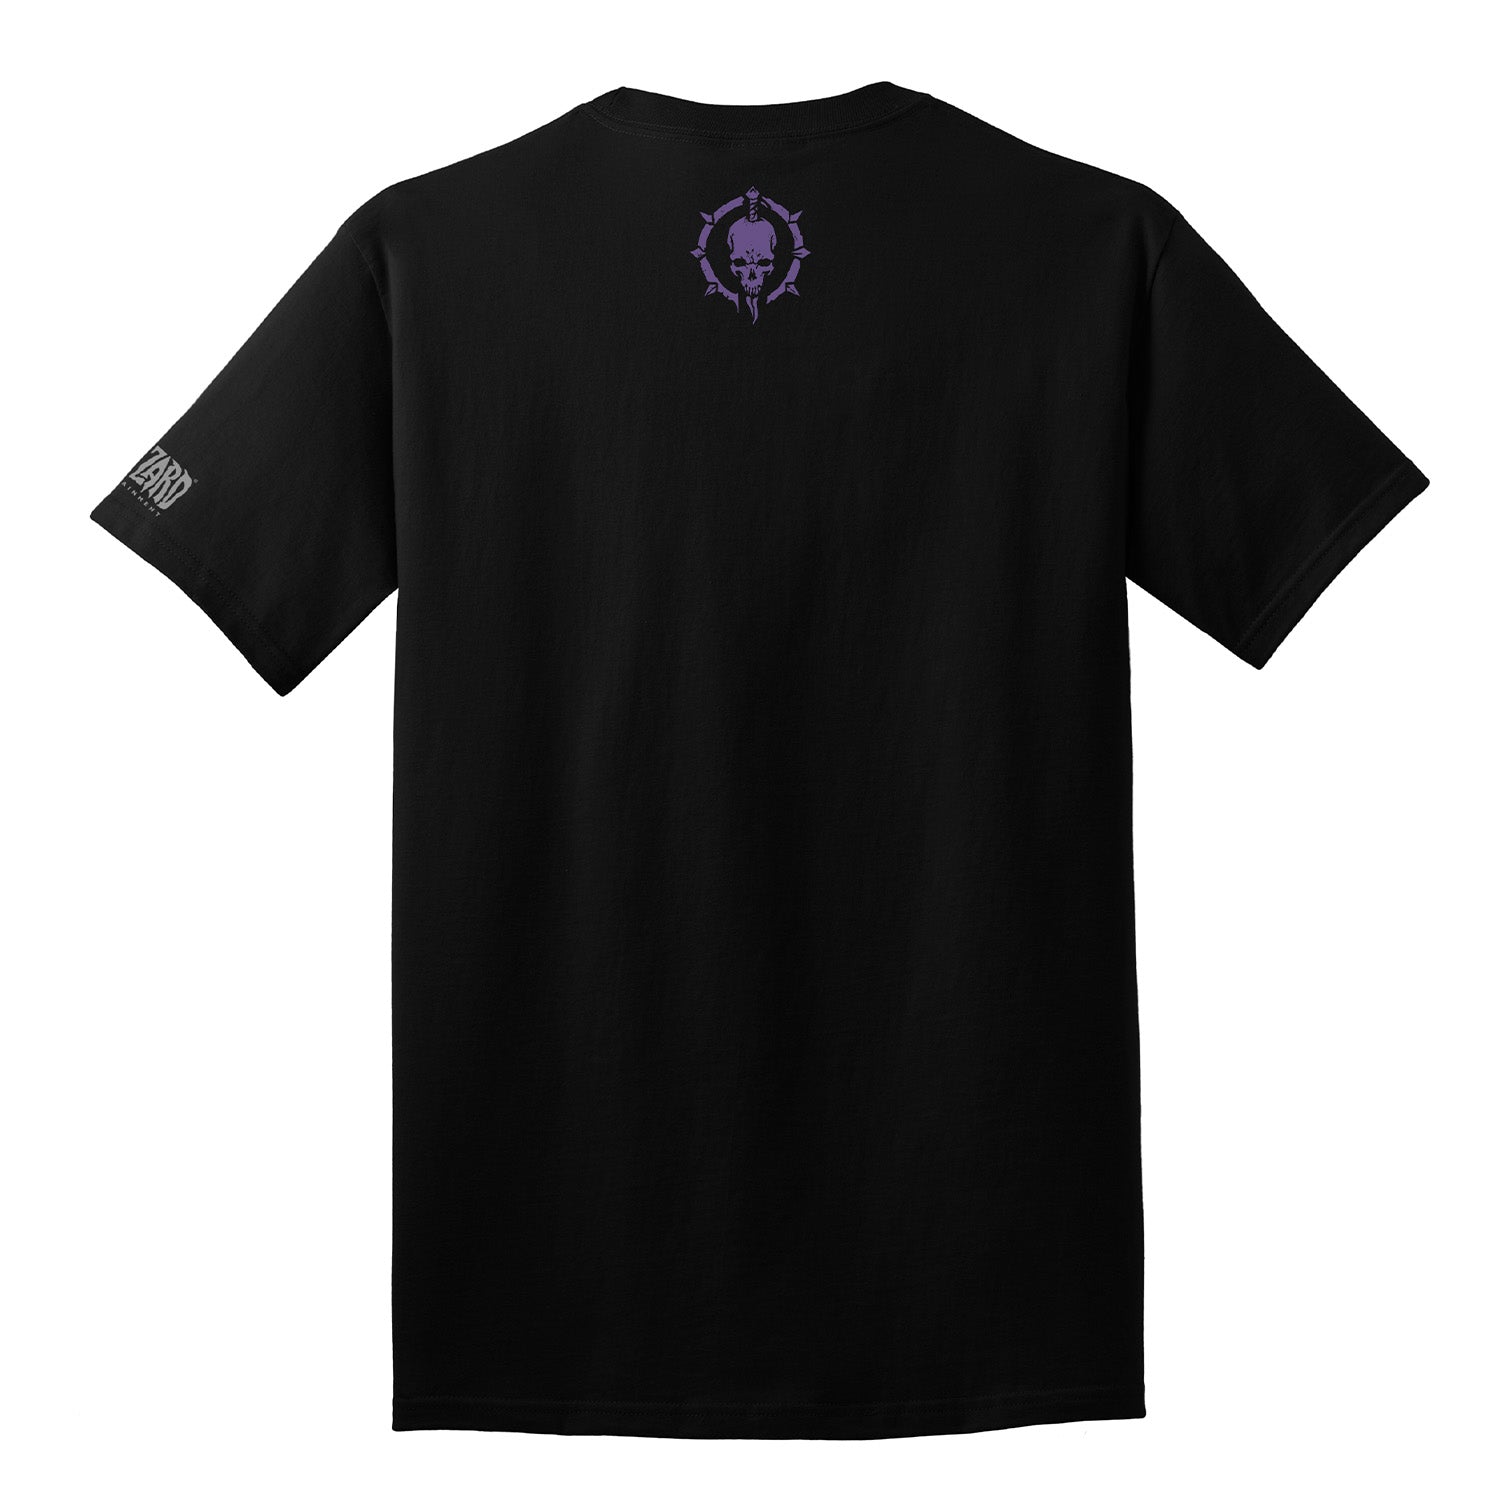 Diablo IV Necromancer Black T-Shirt - Back View